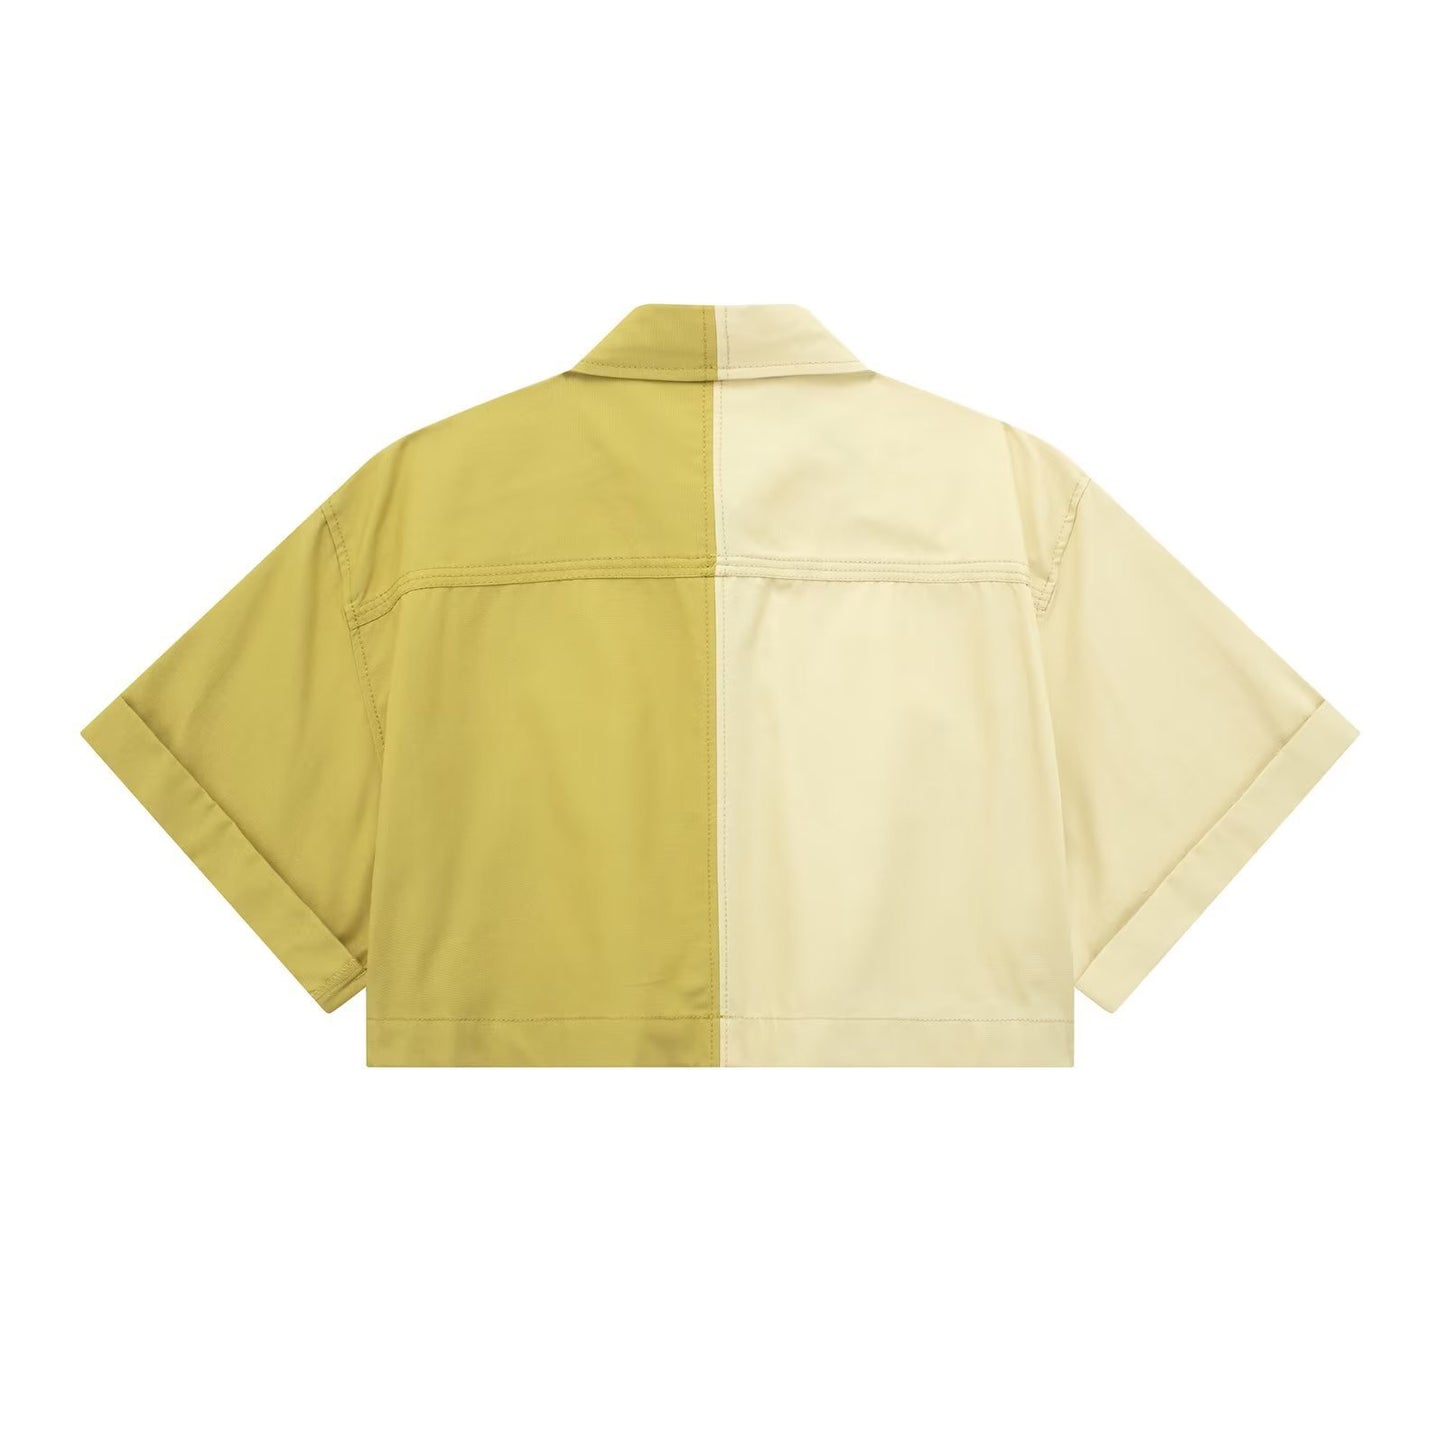 Women's Patchwork Three-piece Windbreaker Fabric Shirt Midi Skirt Skirt Waist With Trim Straight